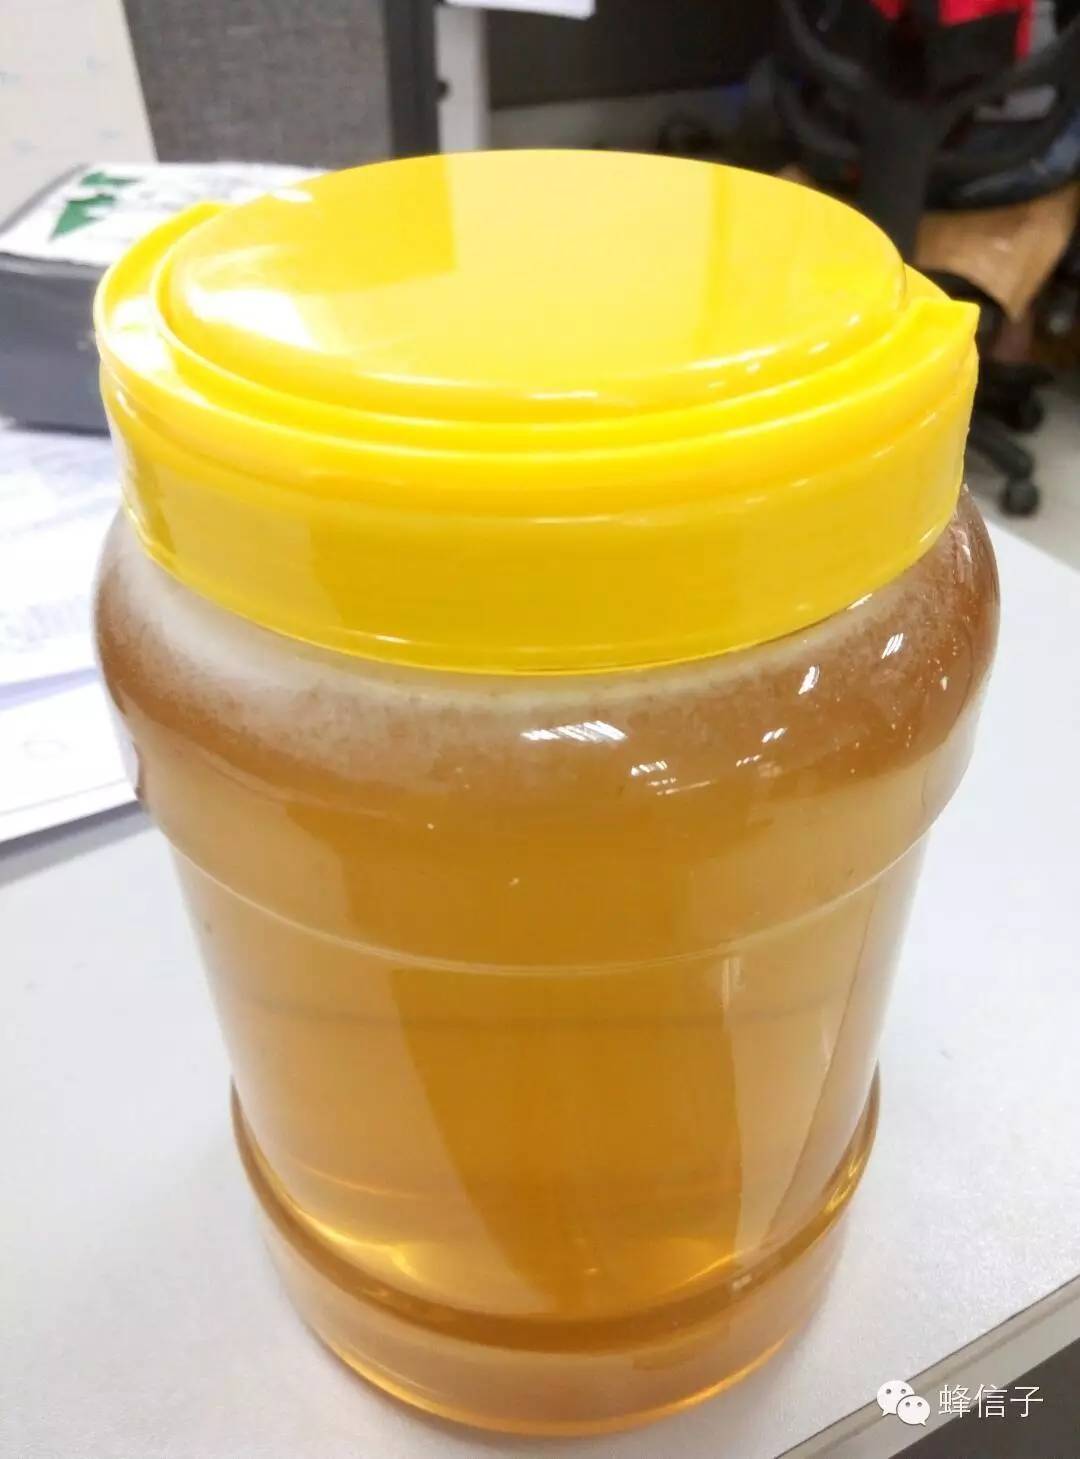 豆浆蜂蜜 什么牌子的蜂蜜比较好 蜂蜜包装 自制蜂蜜美白祛斑面膜 蜂蜜养胃吗